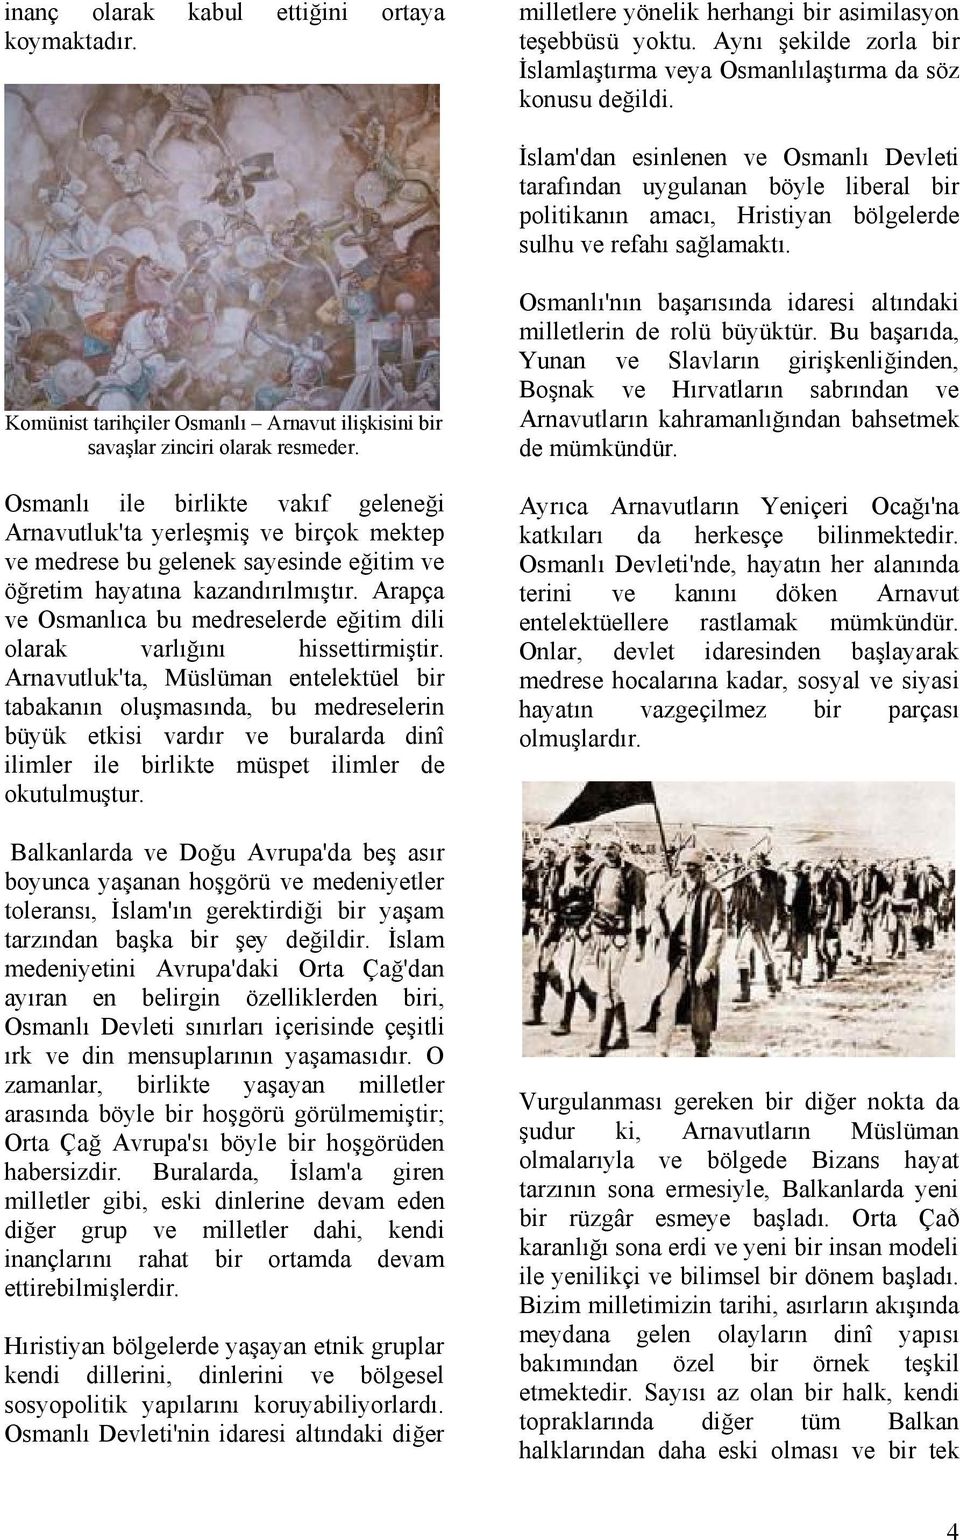 Komünist tarihçiler Osmanlı Arnavut ilişkisini bir savaşlar zinciri olarak resmeder.